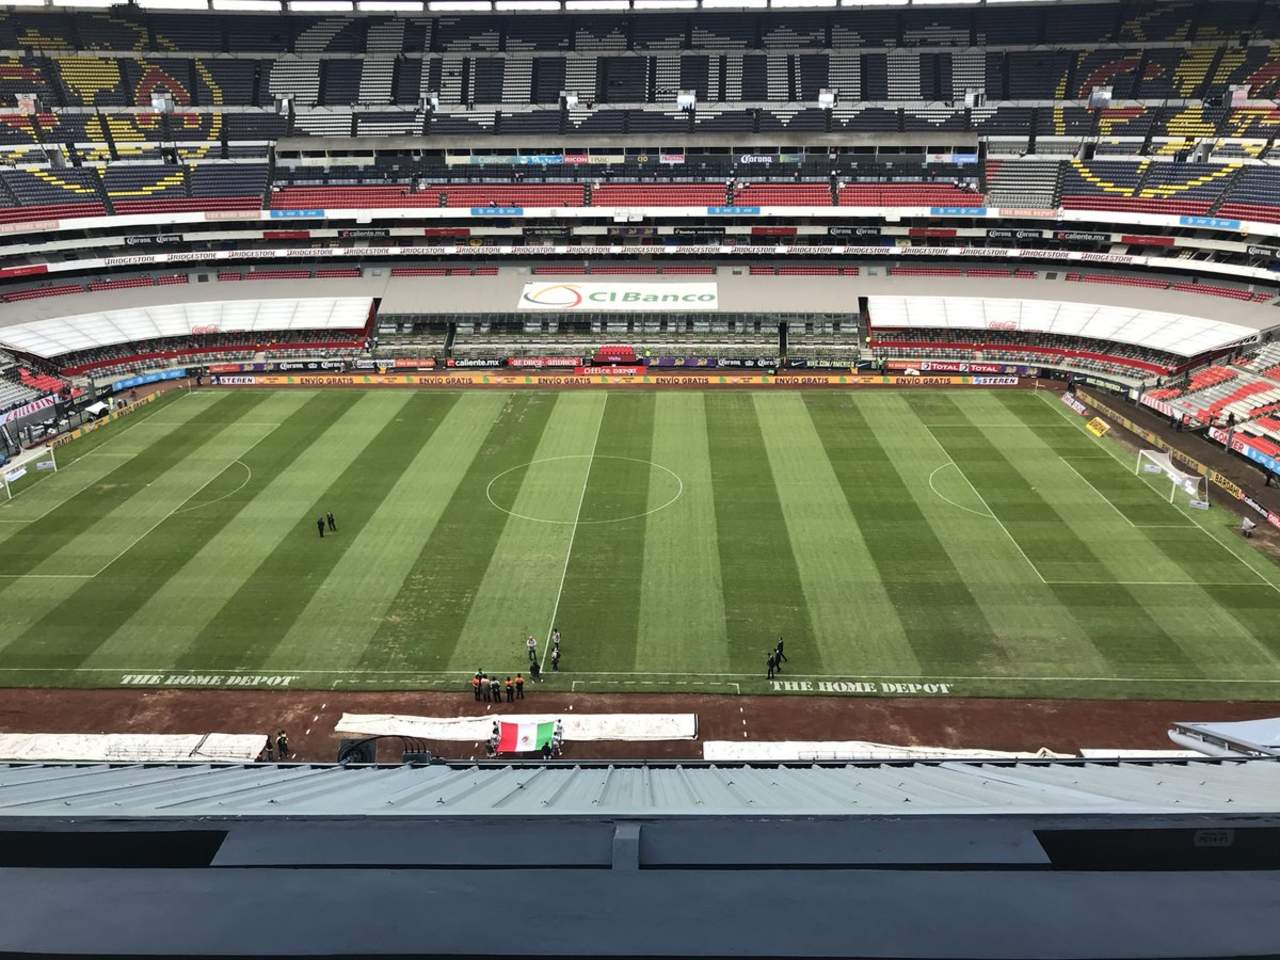 Además de que se reanuda la actividad de Liga y Copa MX, el terreno de juego deberá estar preparado y en buenas condiciones para albergar un juego de la temporada regular de la NFL. (ESPECIAL)